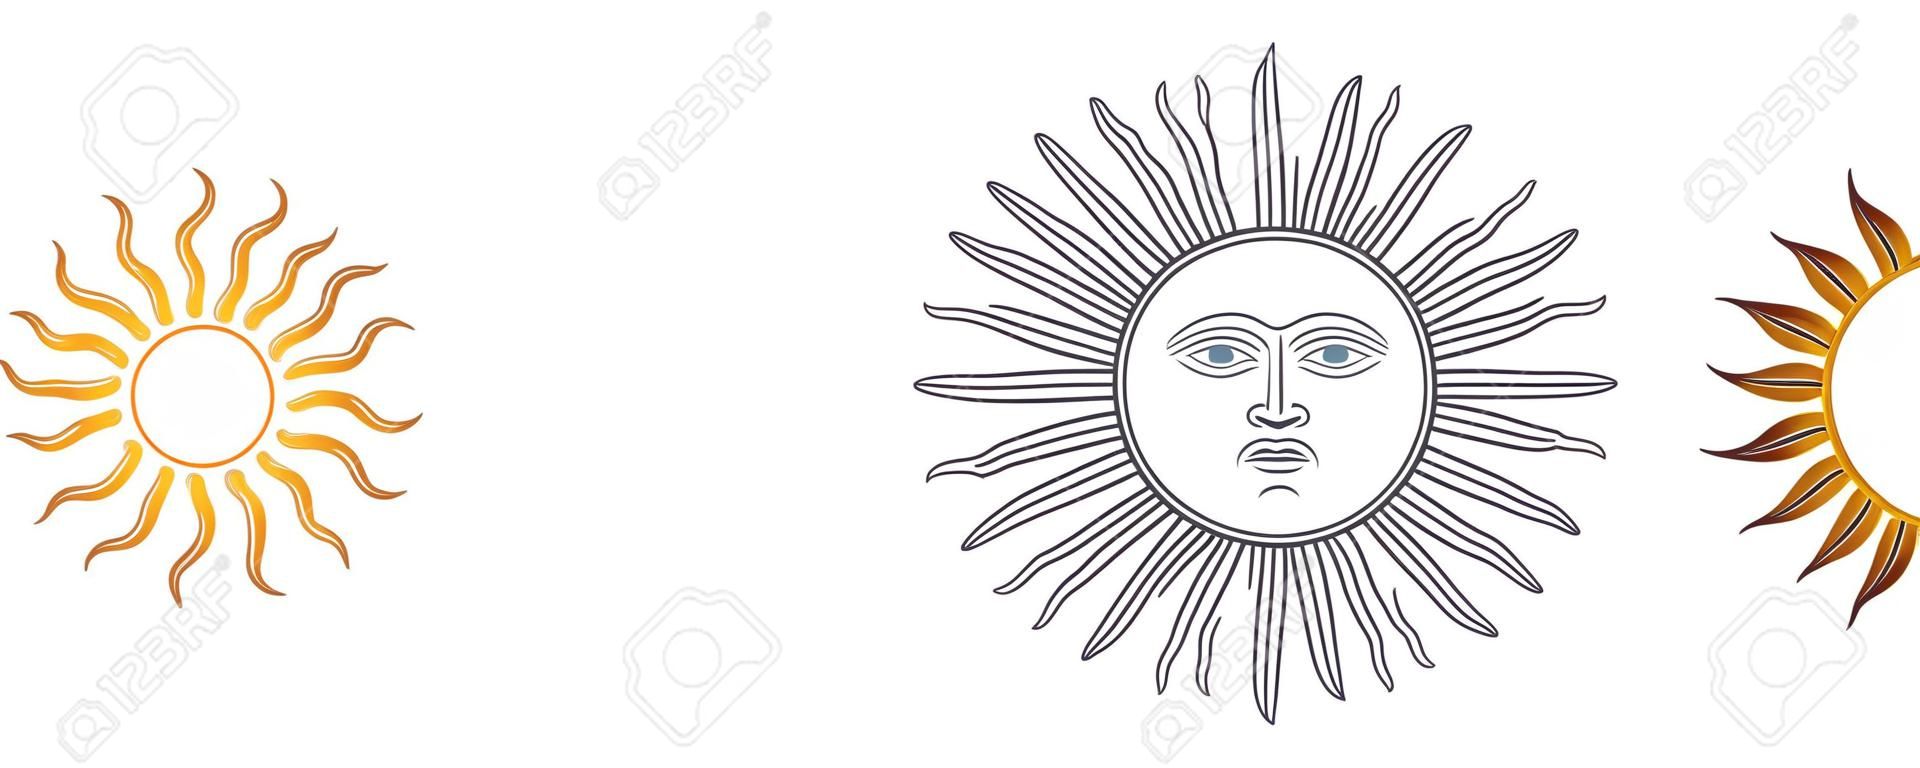 五月的太阳变化。西班牙Sol de Mayo，乌拉圭和阿根廷的国徽。放射状，银色或金黄色的太阳，带有人脸以及笔直和波浪状的光线。在白色的例证。向量。